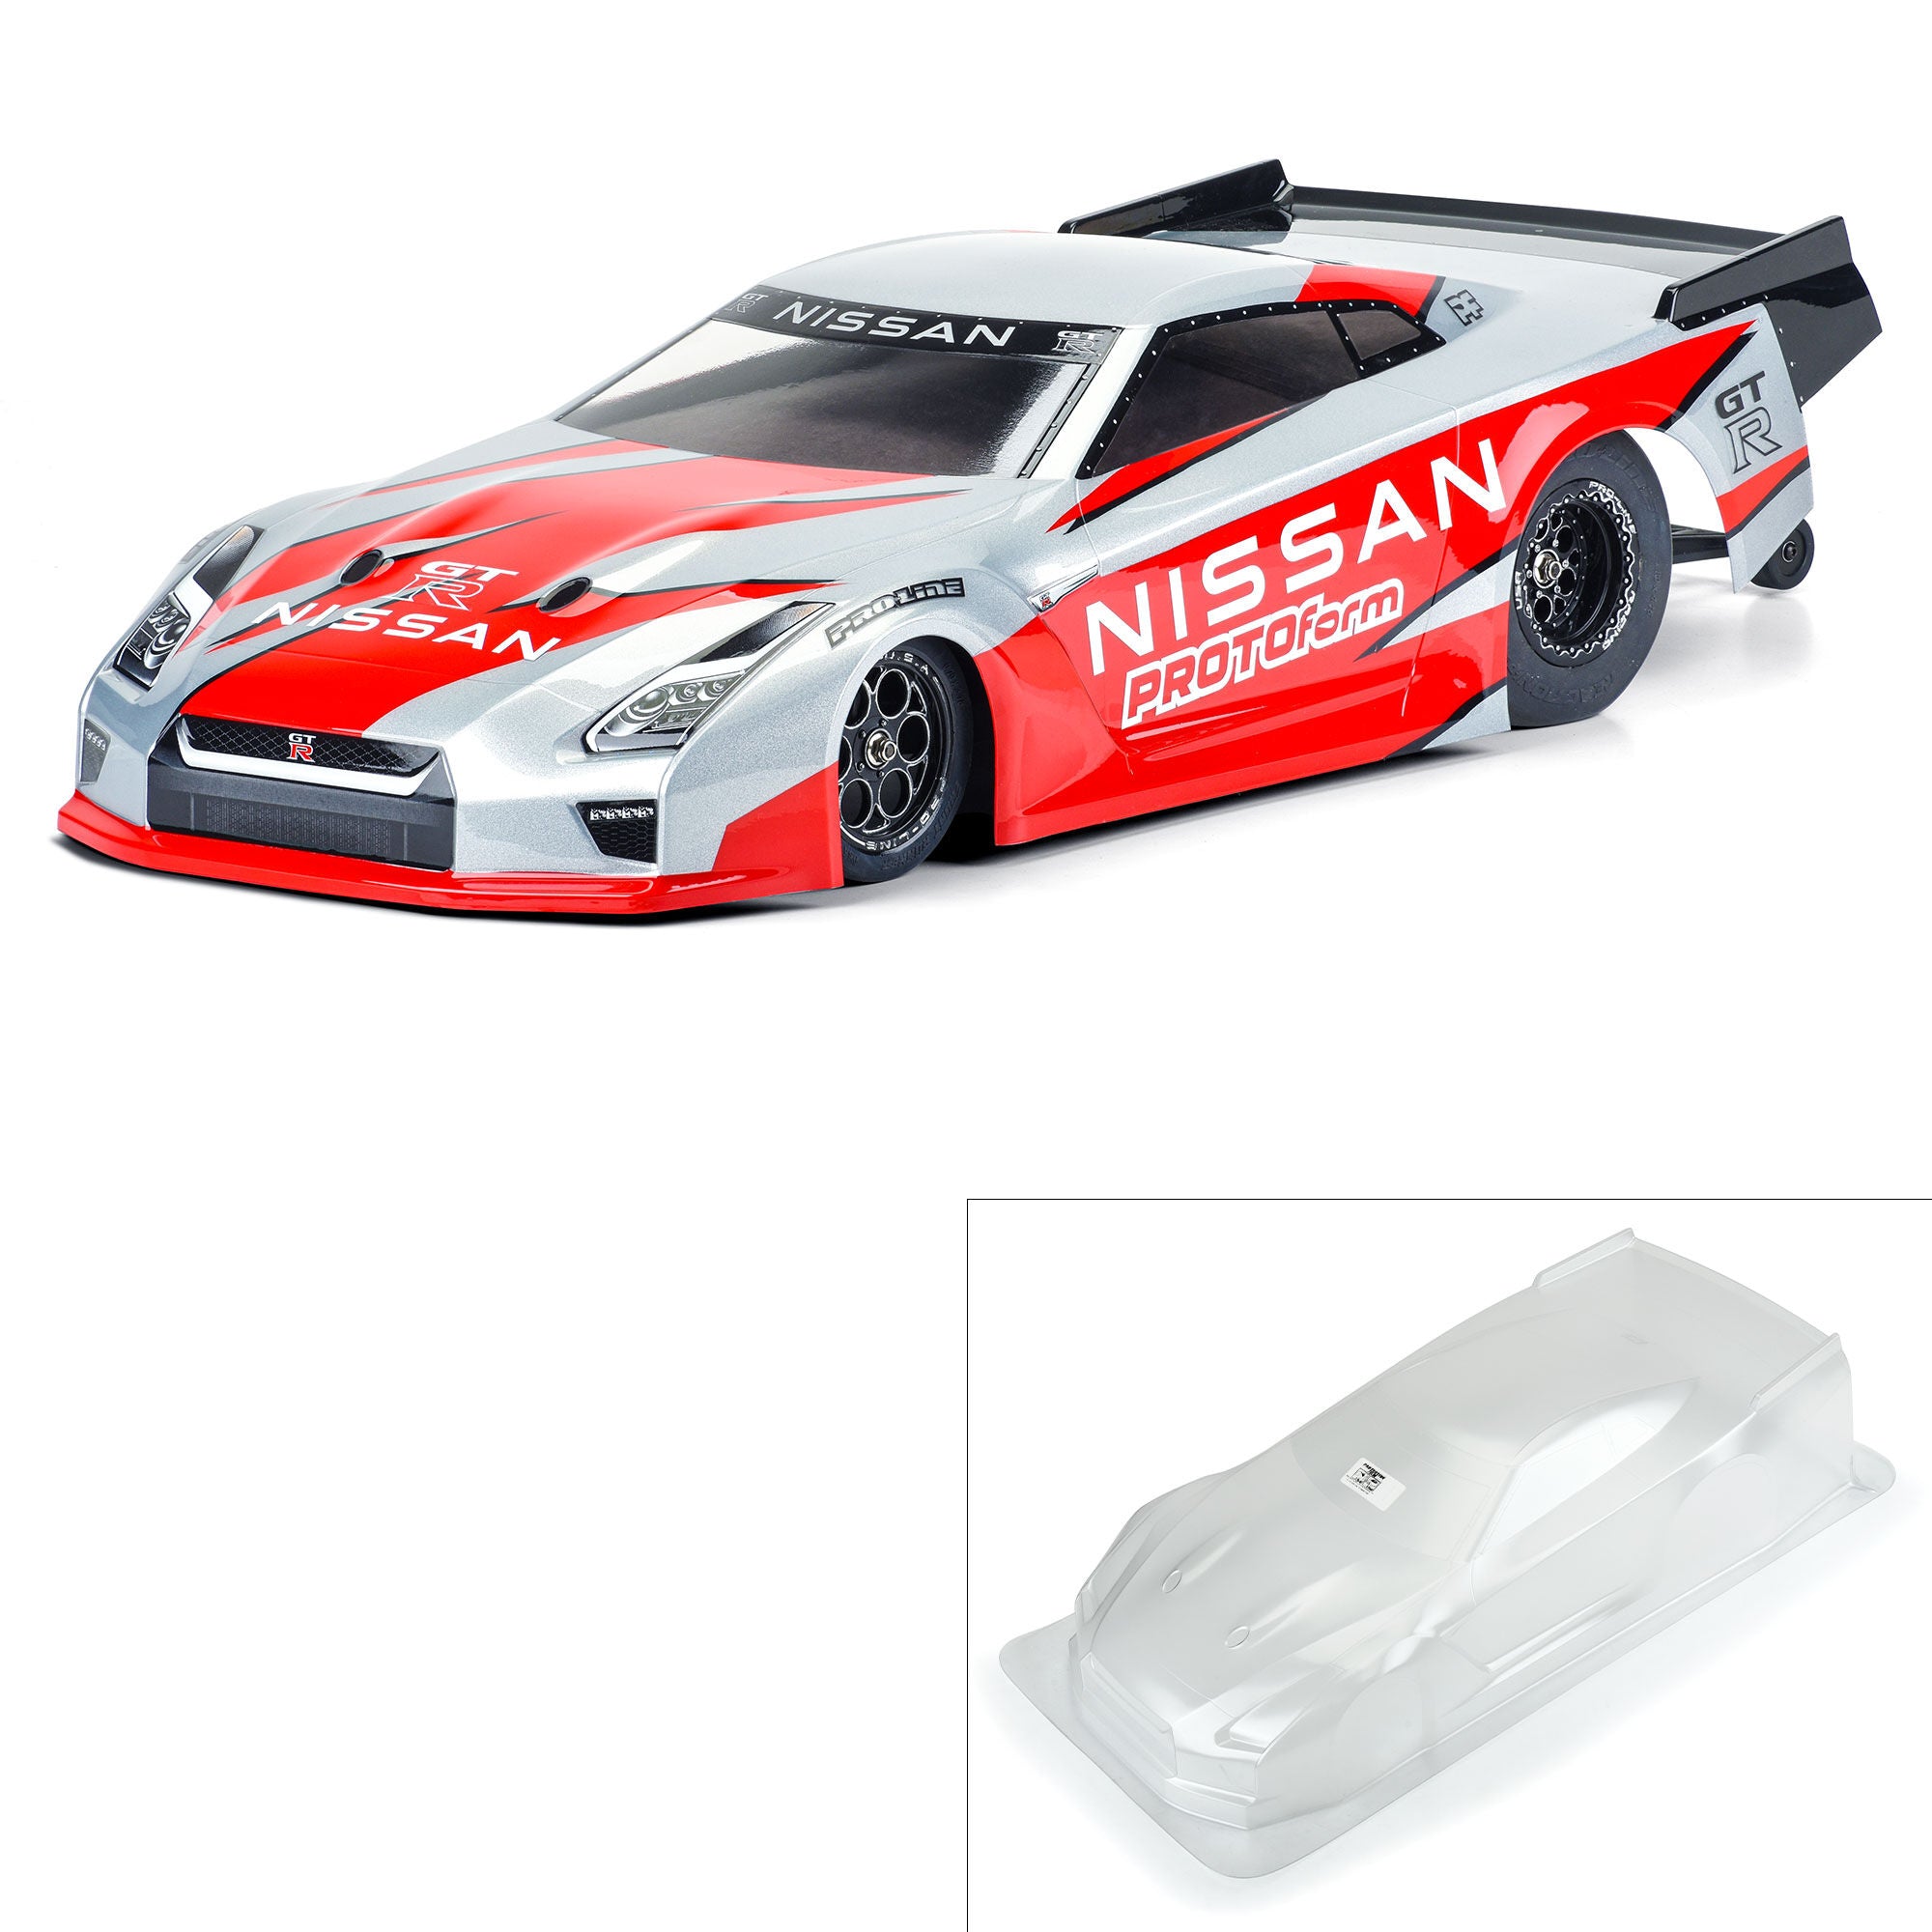 PROTOFORM 1585-00 1/10 Nissan GT-R R35 Clear Body: Losi 22S Drag Car